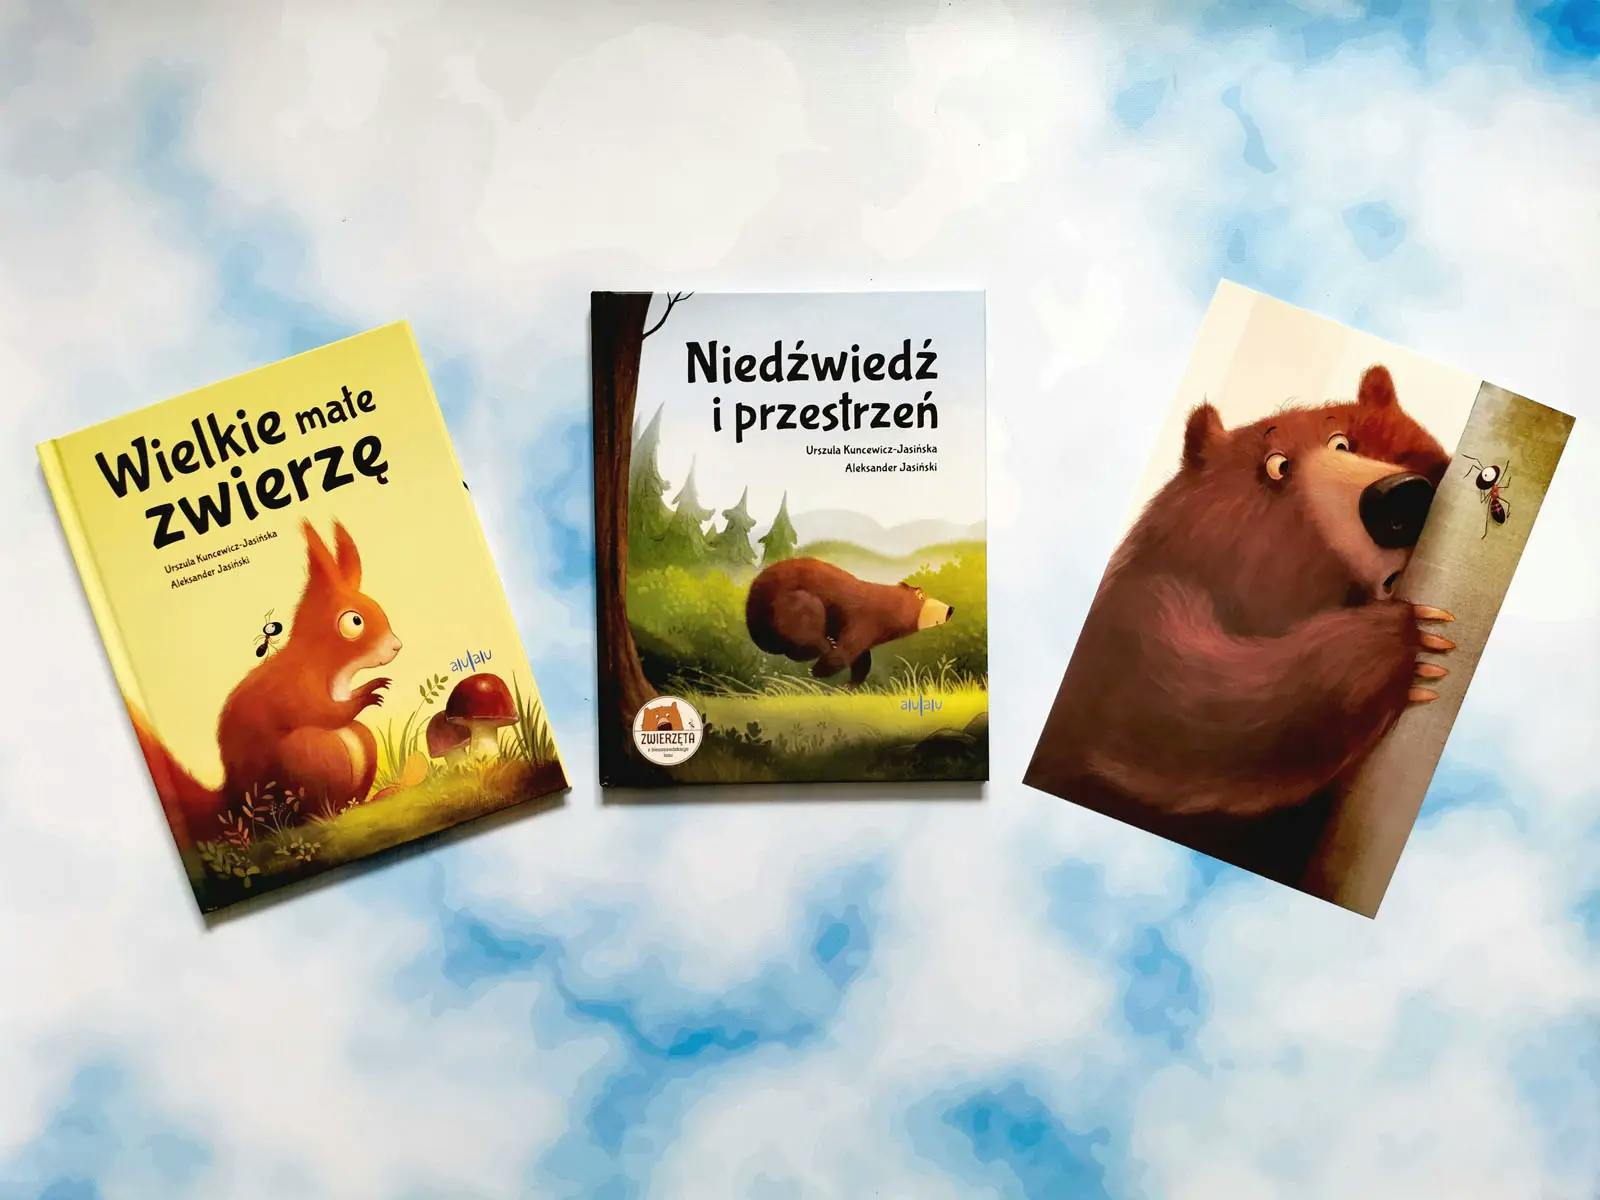 Niedźwiedź i przestrzeń - recenzja książki z serii Zwierzęta z bieszczadzkiego lasu